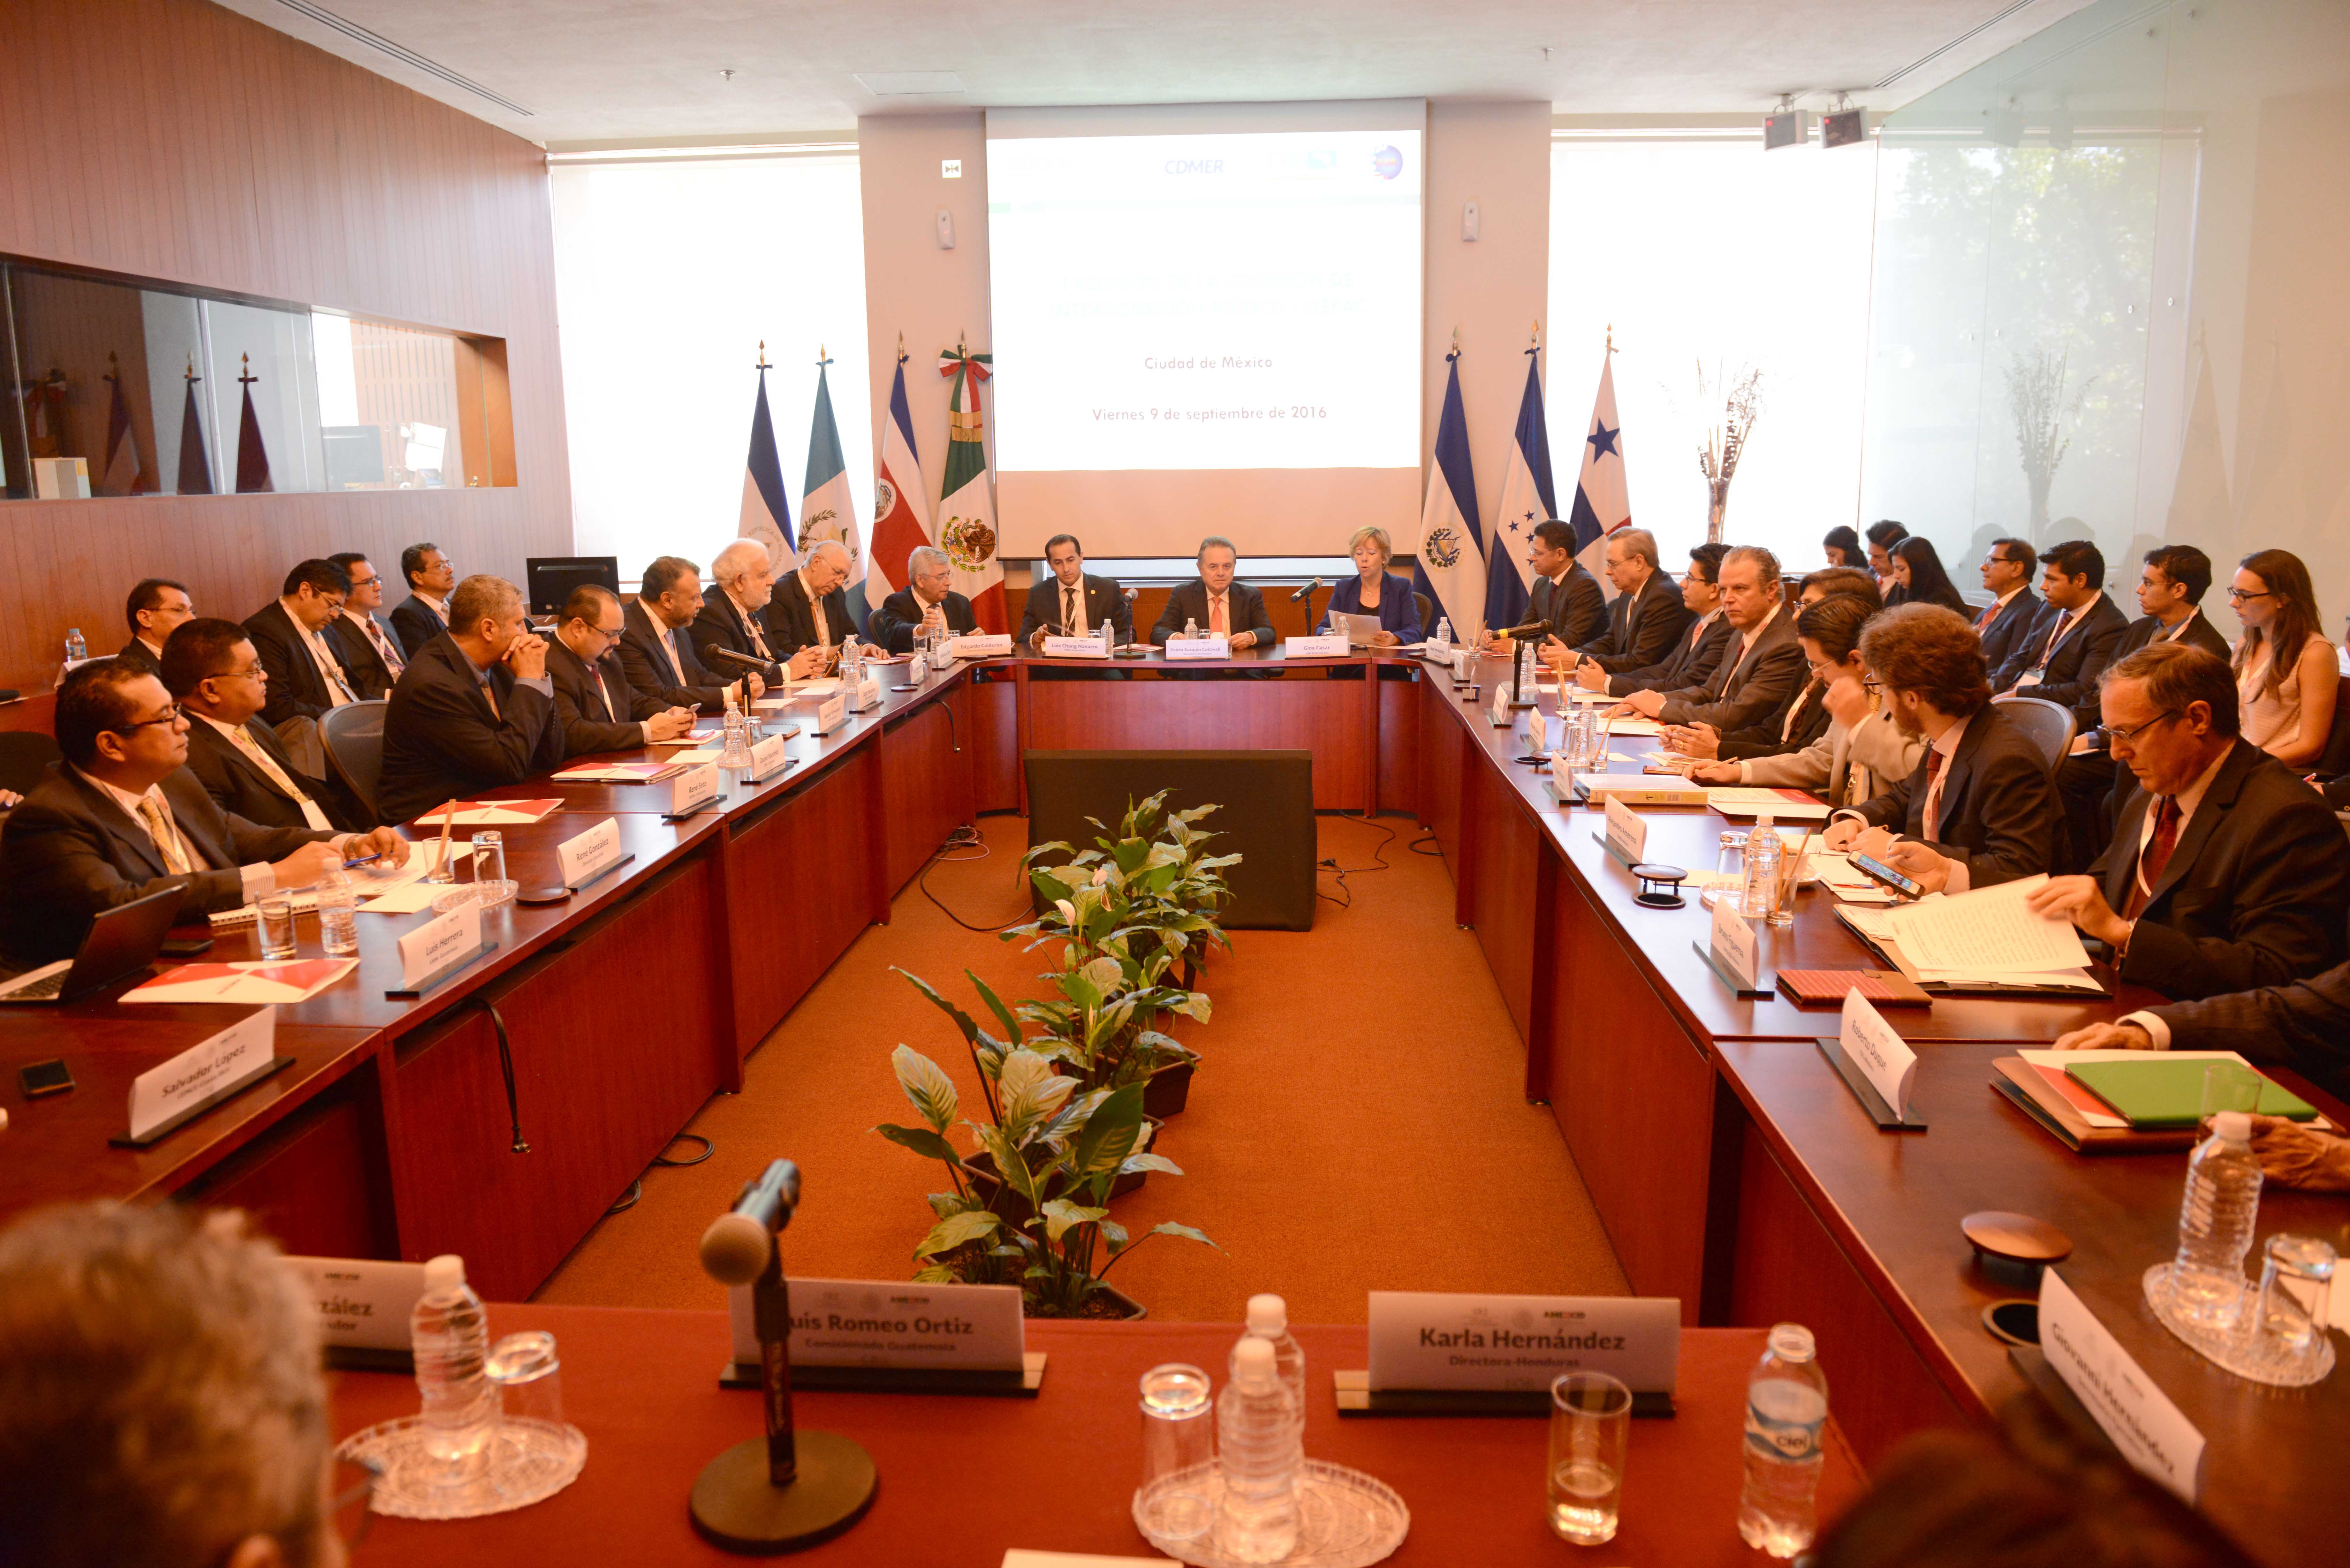 La creación de la CIEMS fue anunciada el pasado 4 de mayo en la Cumbre de Seguridad Energética EE.UU., Centroamérica y El Caribe. Por parte de México está conformada por autoridades de SENER, CENACE, CFE y AMEXCID, quien acompaña este proceso con el fin de dar seguimiento a los compromisos adquiridos en materia de integración eléctrica derivados de las Cumbres de Jefes de Estado y de Gobierno del Mecanismo de Diálogo y Concertación de Tuxtla.